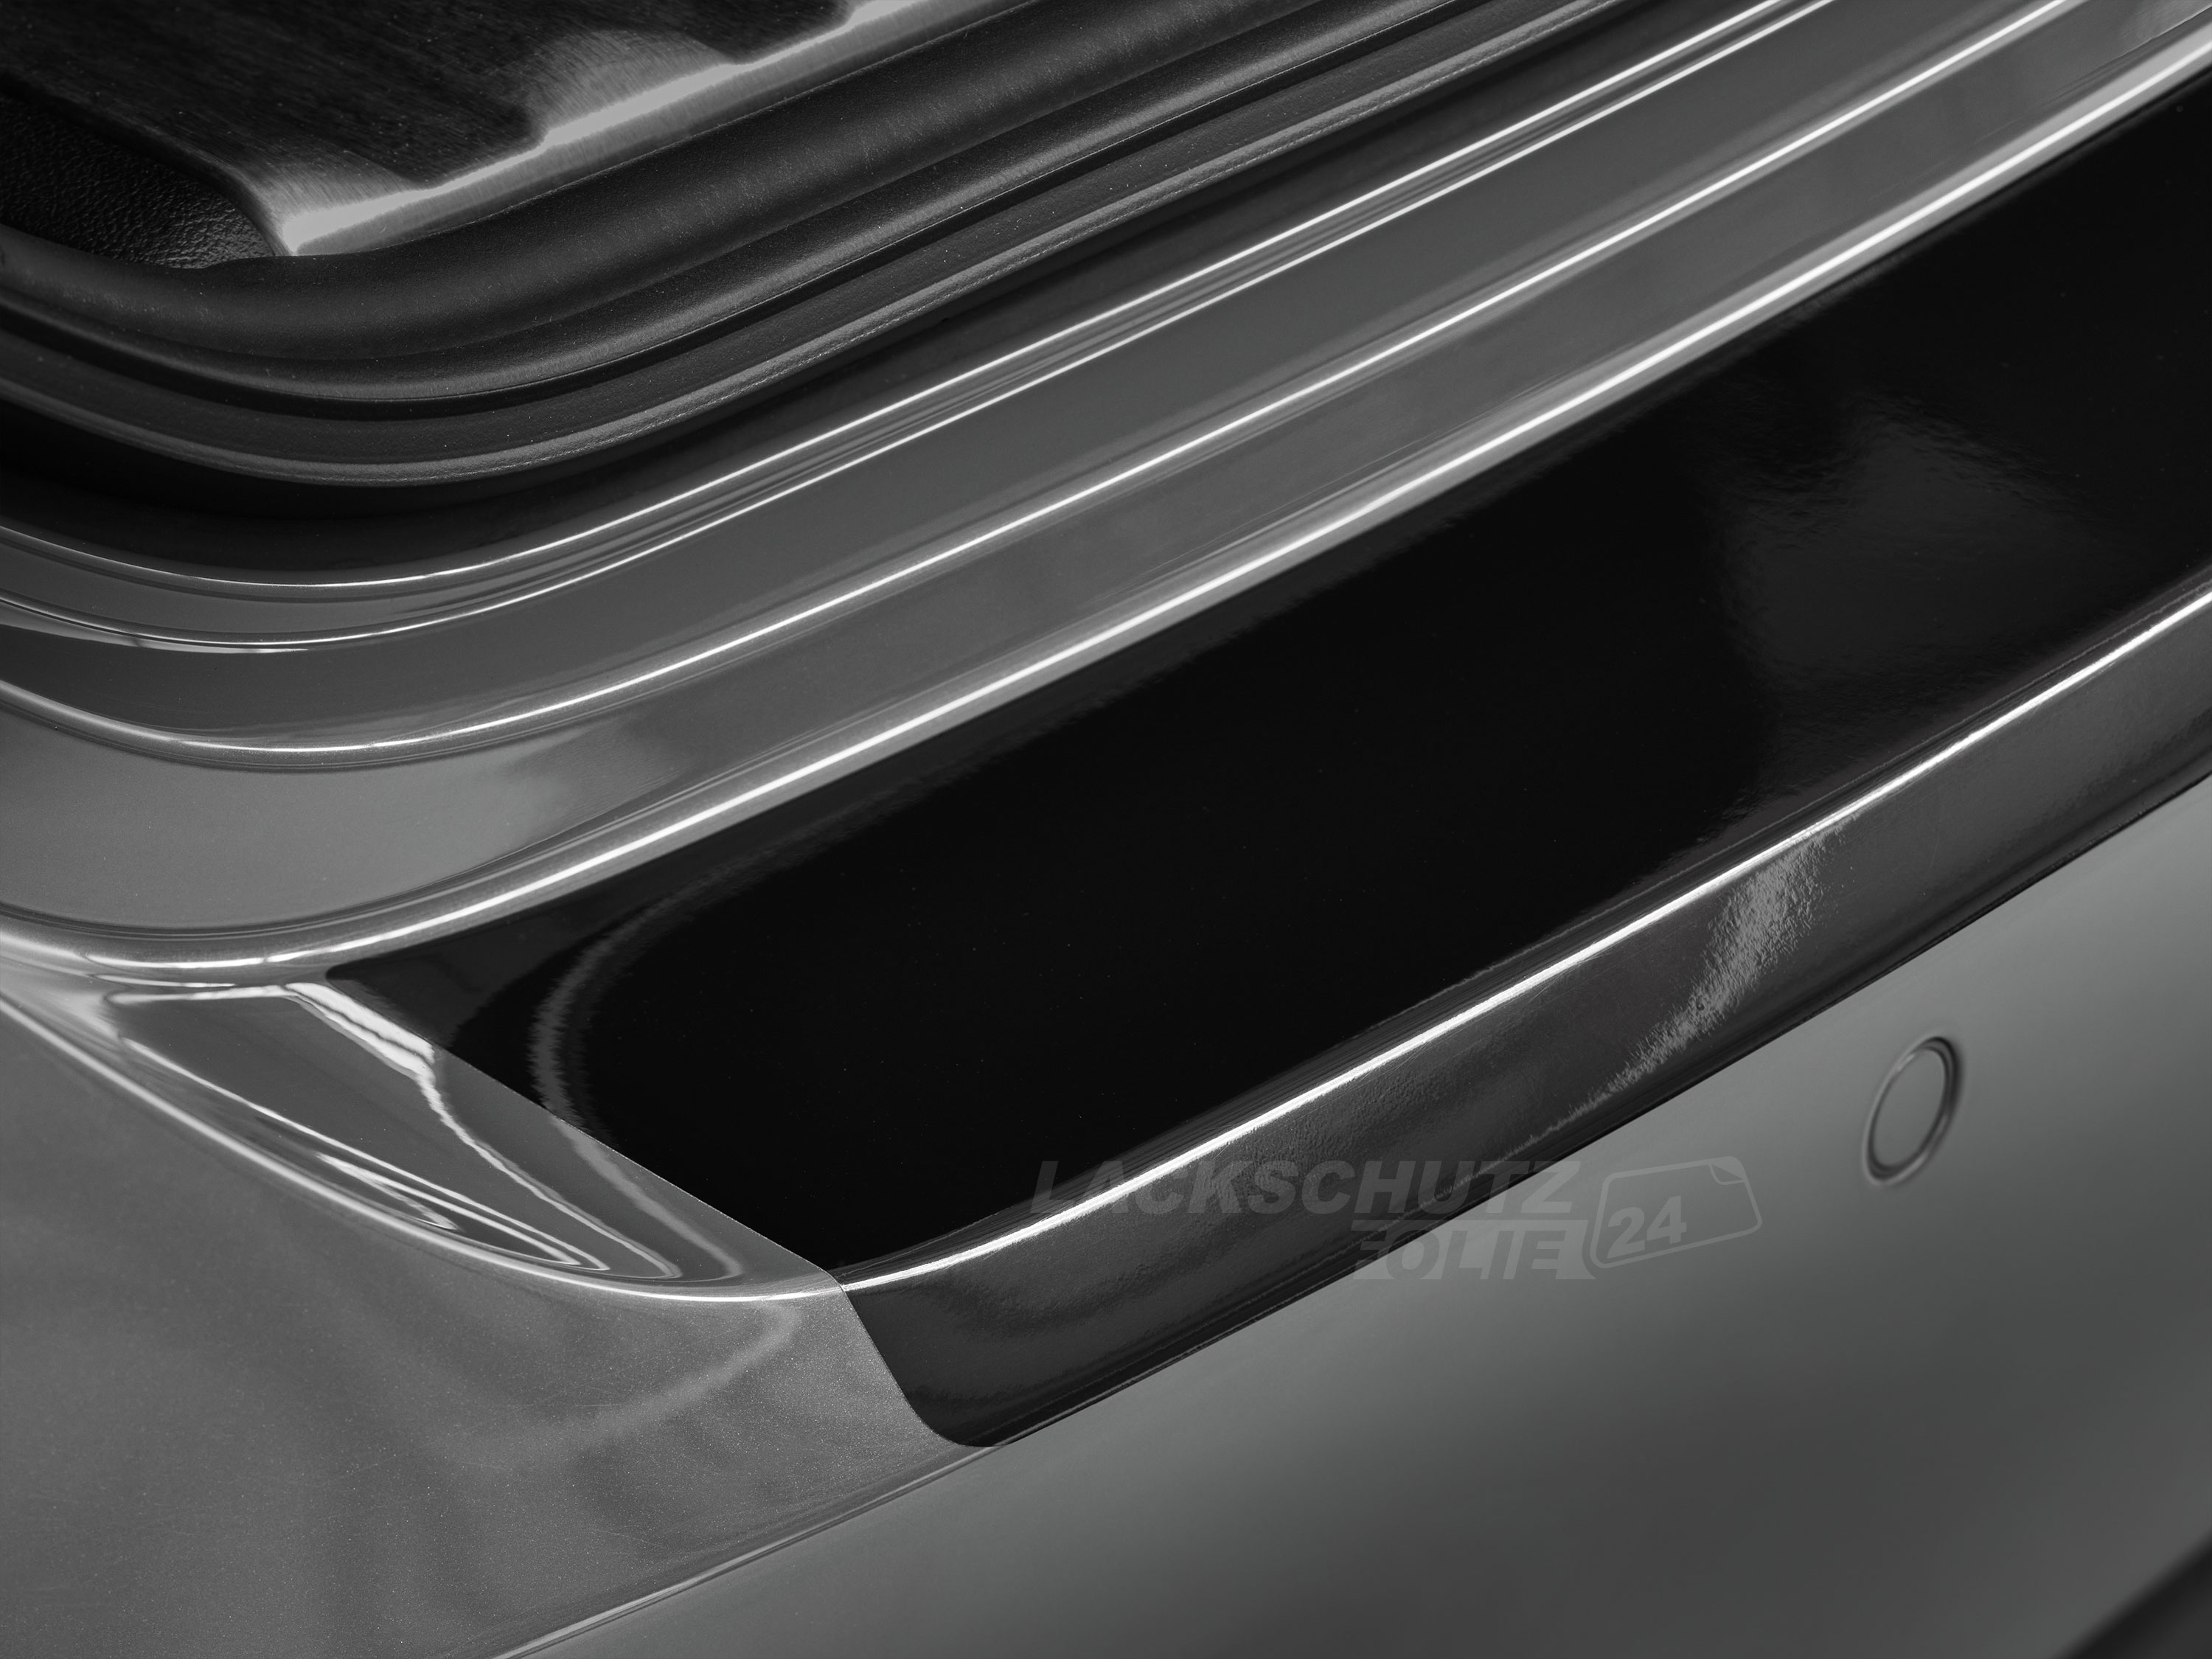 Ladekantenschutzfolie - Schwarz Glatt Hochglänzend für BMW i3 Typ I01, ab BJ 2013 + Faceliftmodell